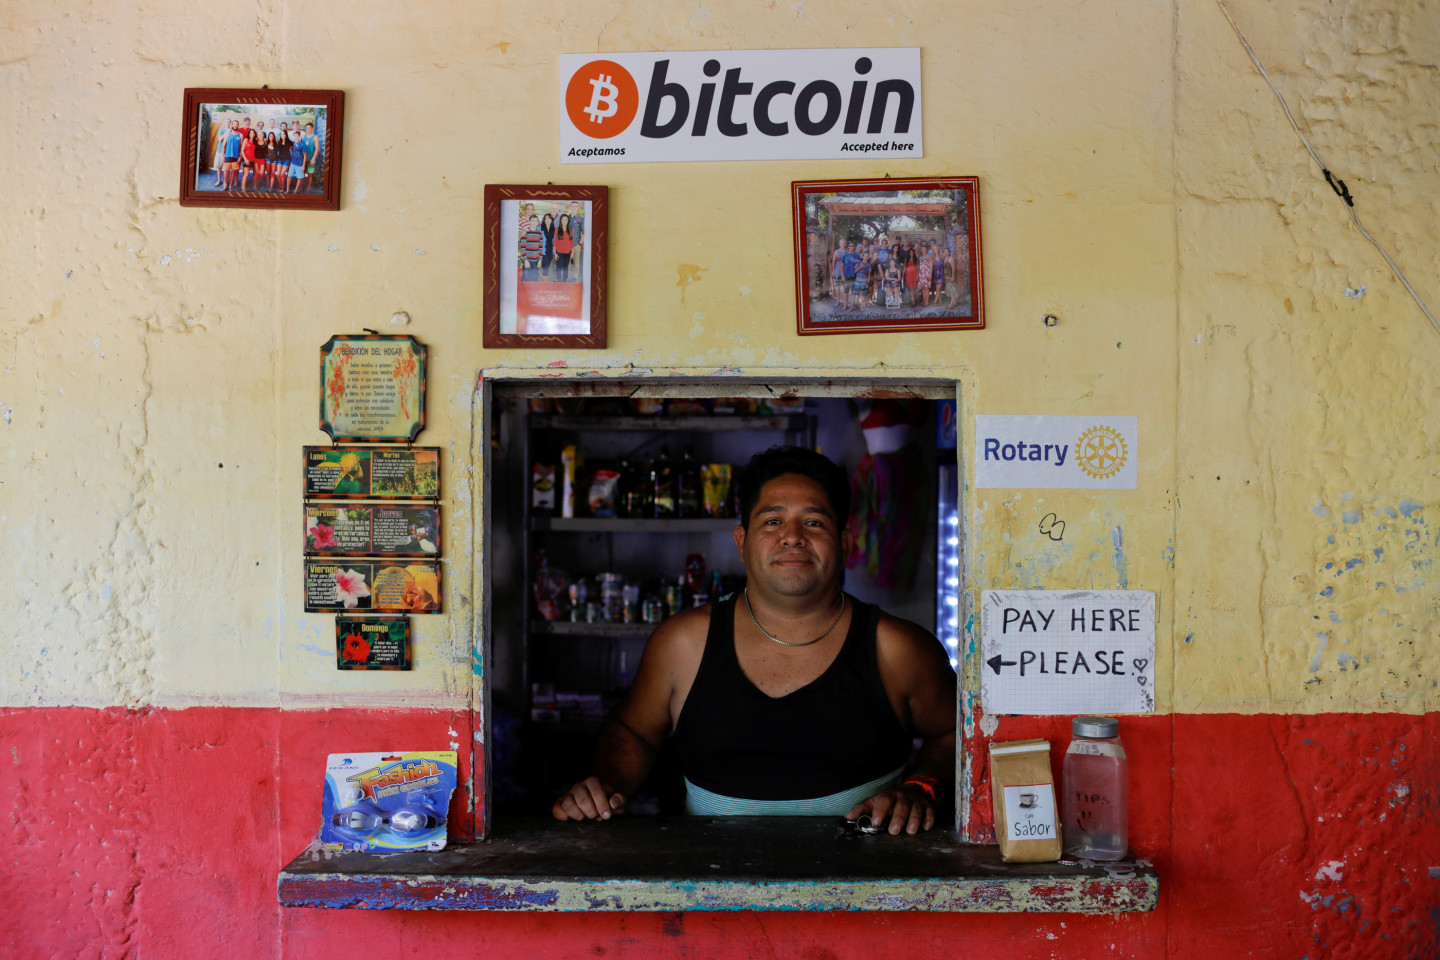 Salvadora kā pirmā valsts pasaule atzīst "Bitcoin" par likumīgu maksāšanas līdzekli - Pasaulē ...